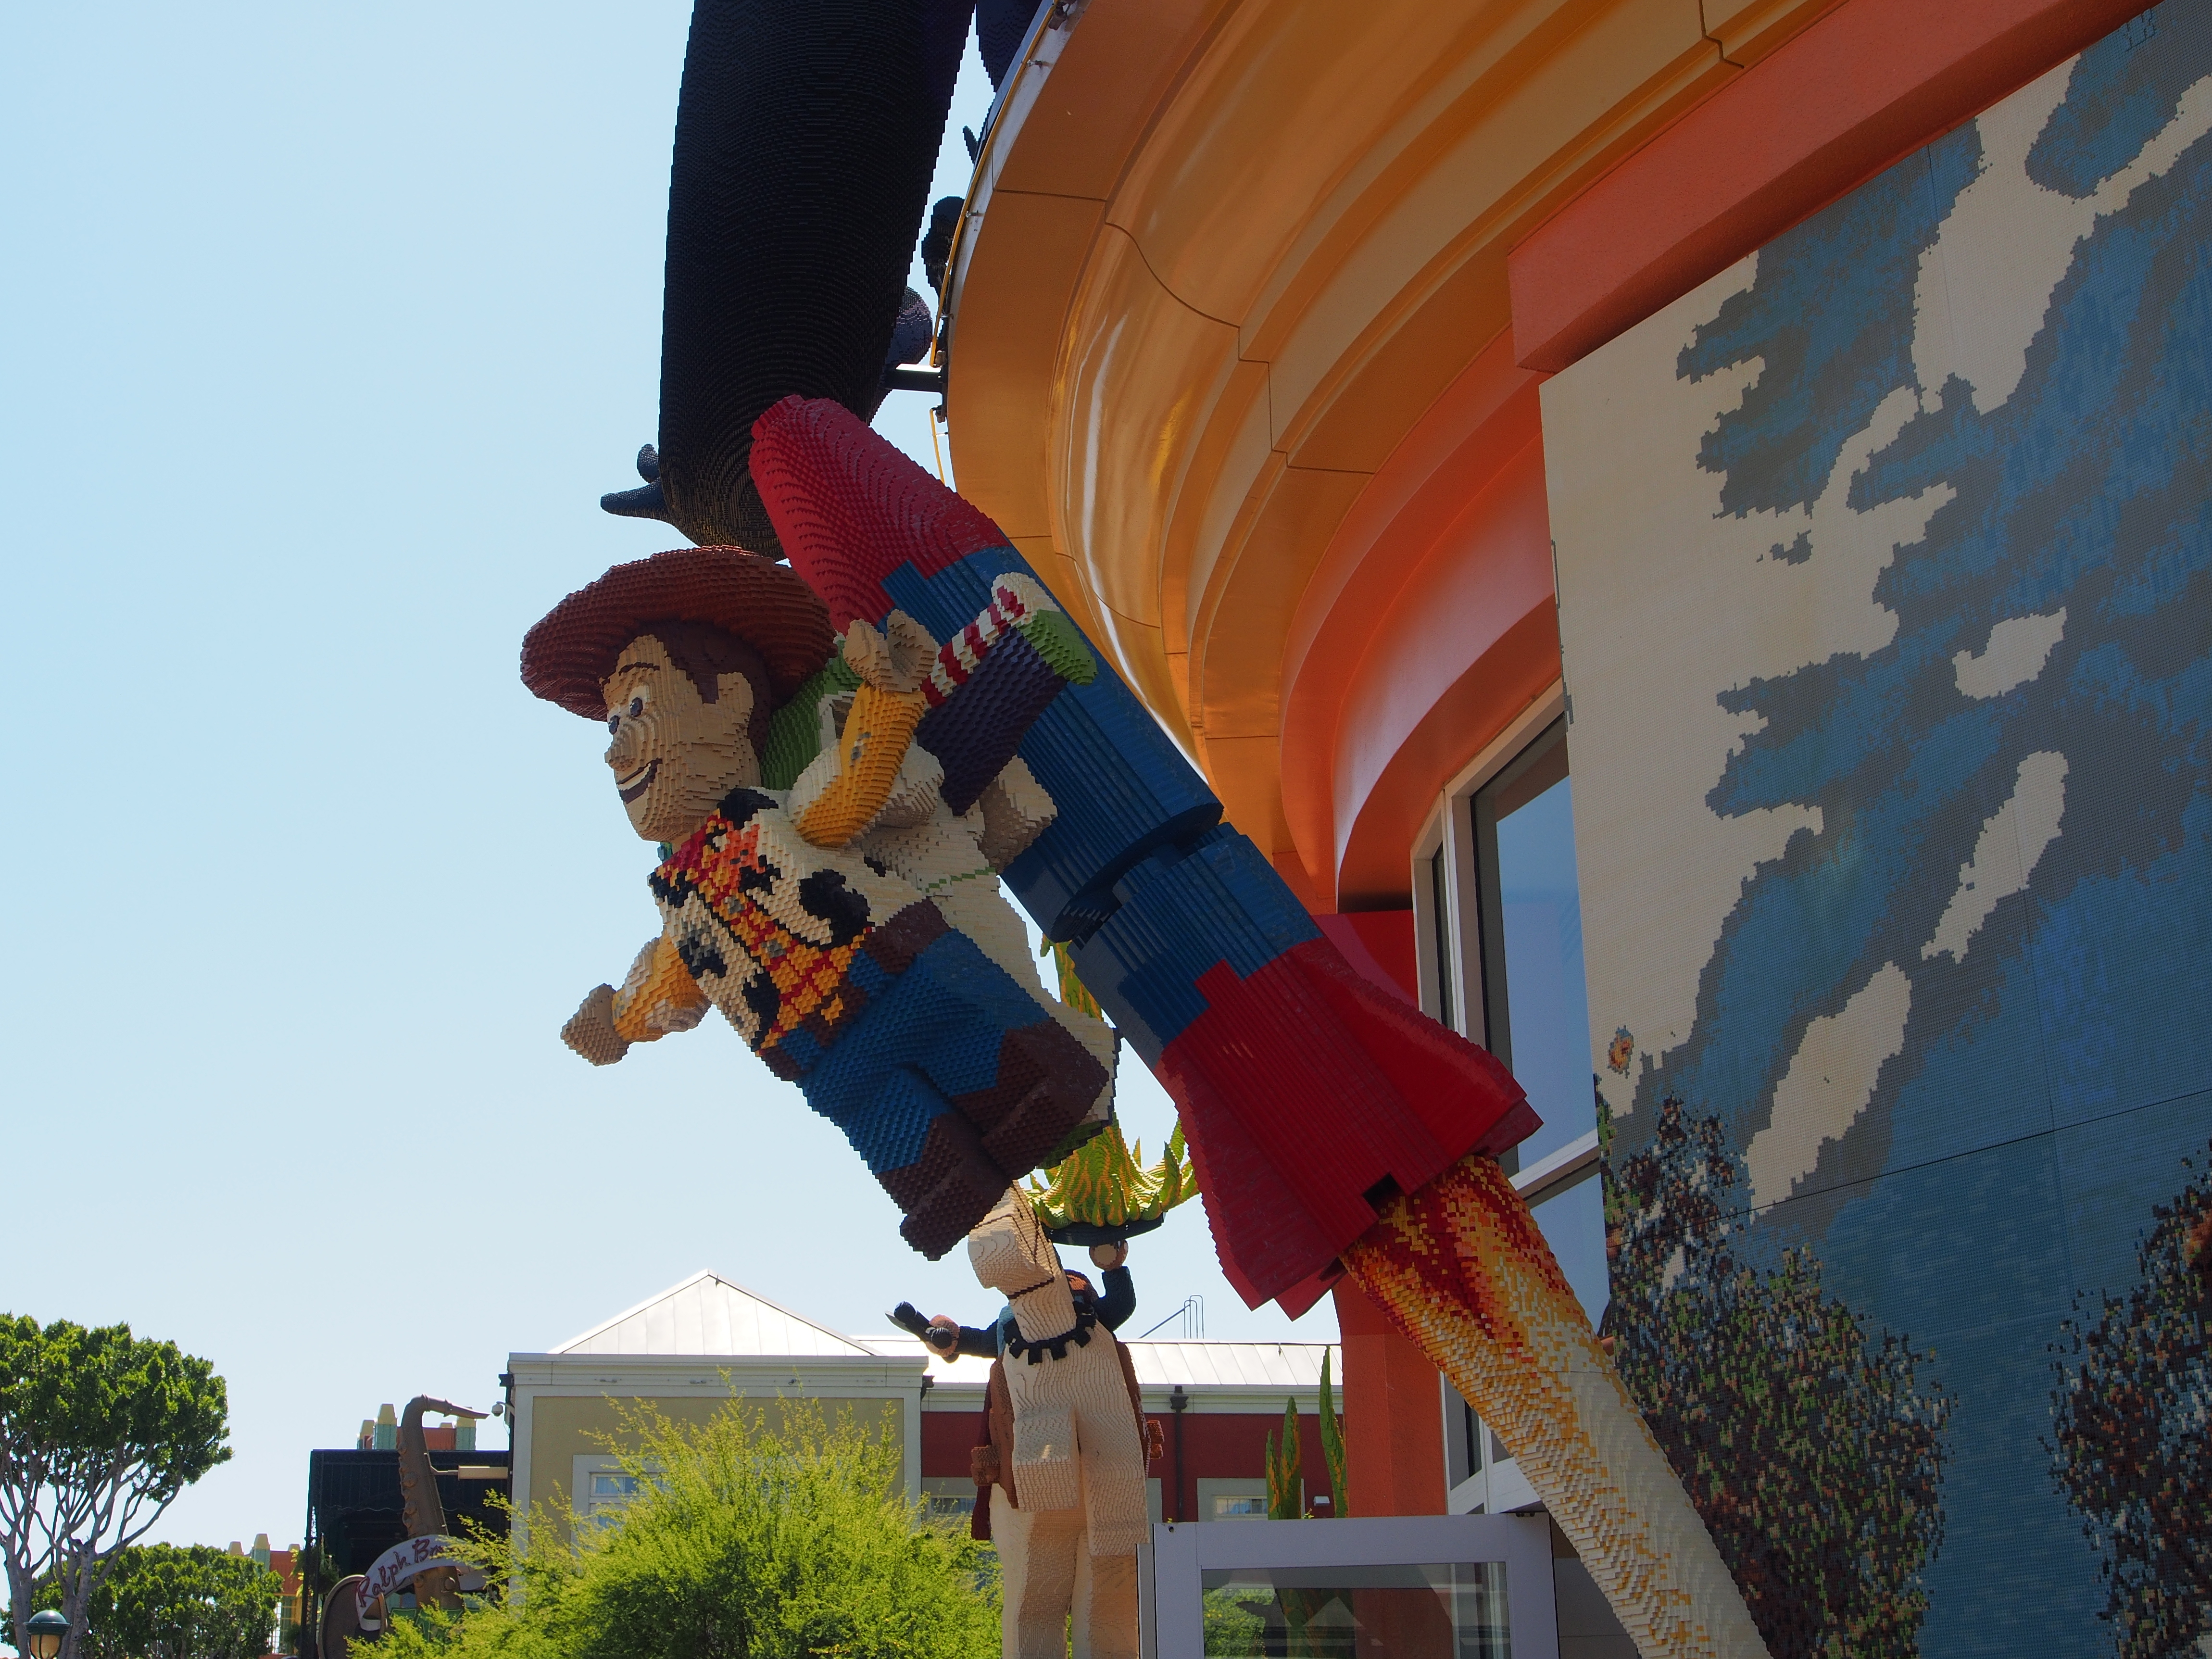 Lego Woody on a rocket